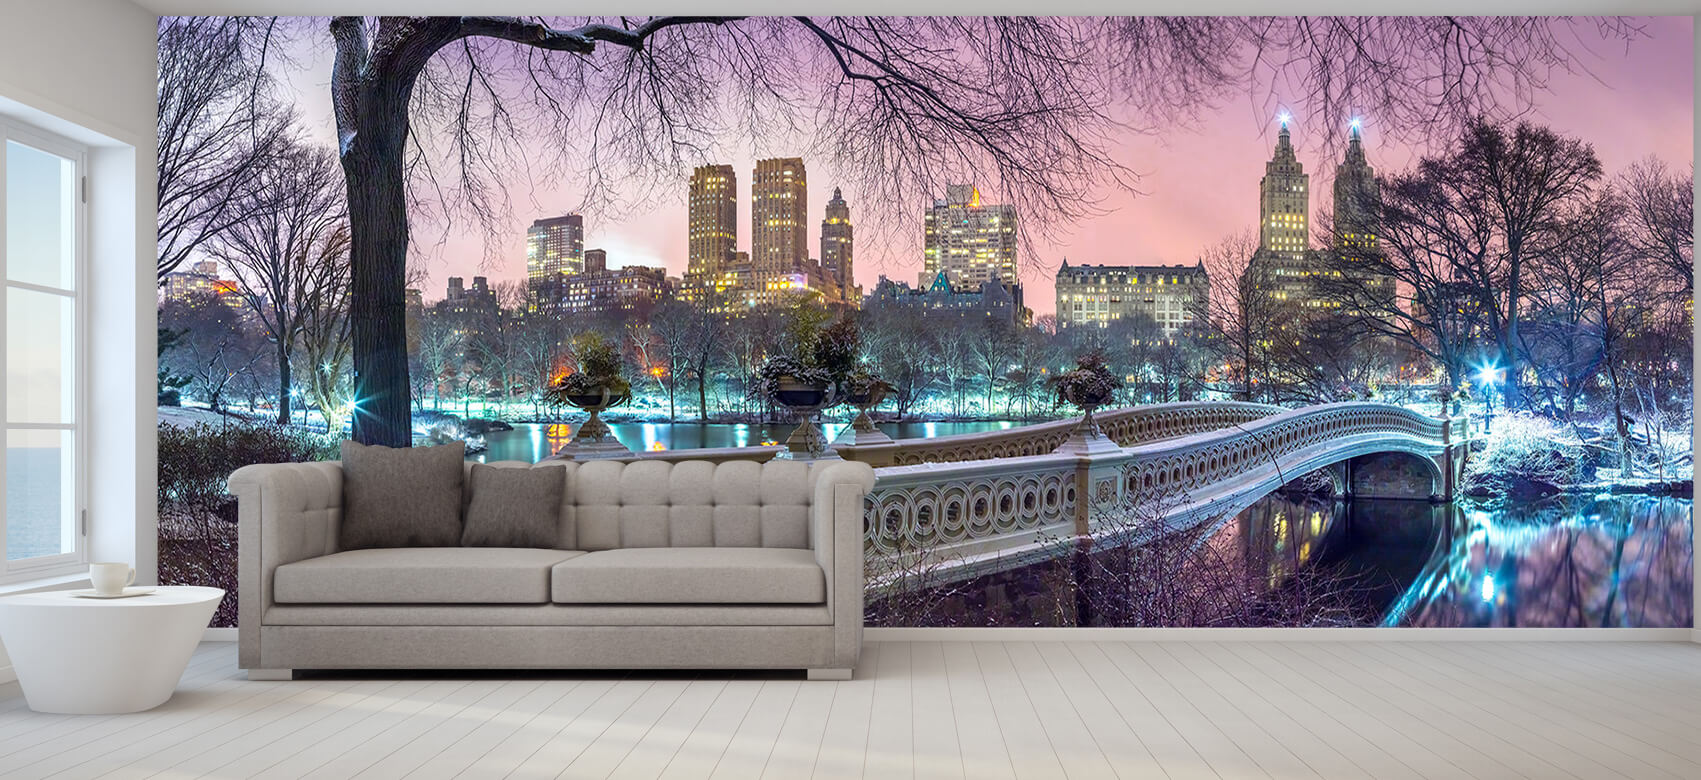  Papel pintado con El colorido Central Park - Salón 5